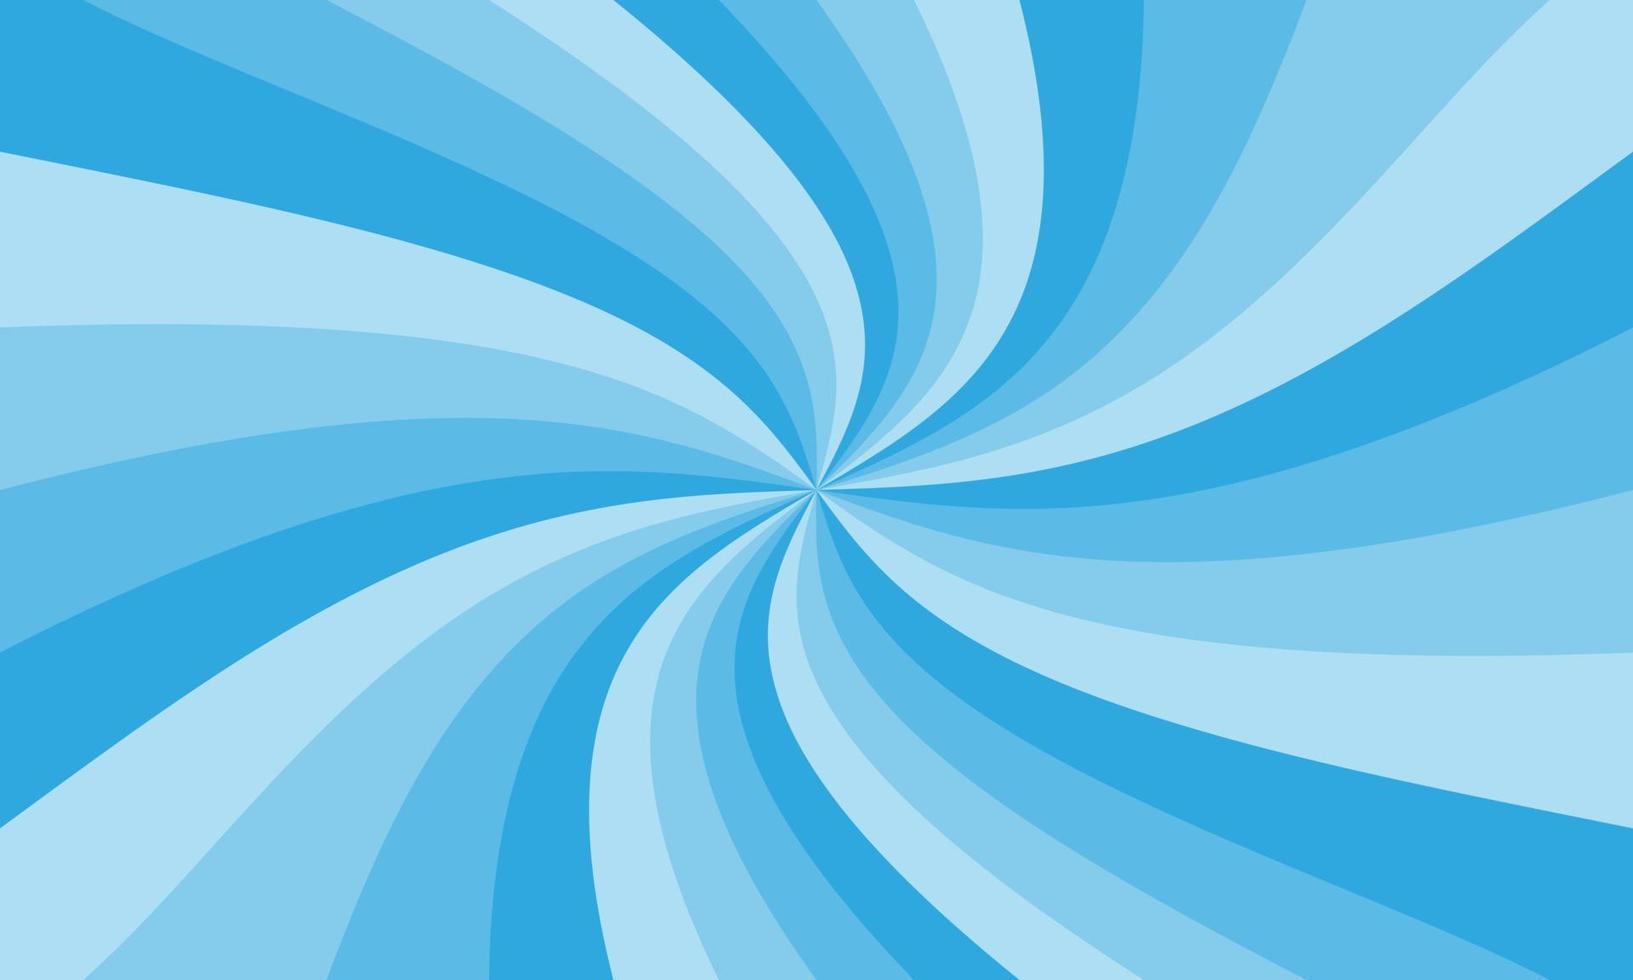 abstrakter explosionshintergrund zur präsentation in blauer farbverlaufsfarbe. Hintergrund mit hellem Blendeffekt. blauer Sunburst-Musterhintergrund. Vektordarstellung eines rotierenden radialen Strahls. vektor